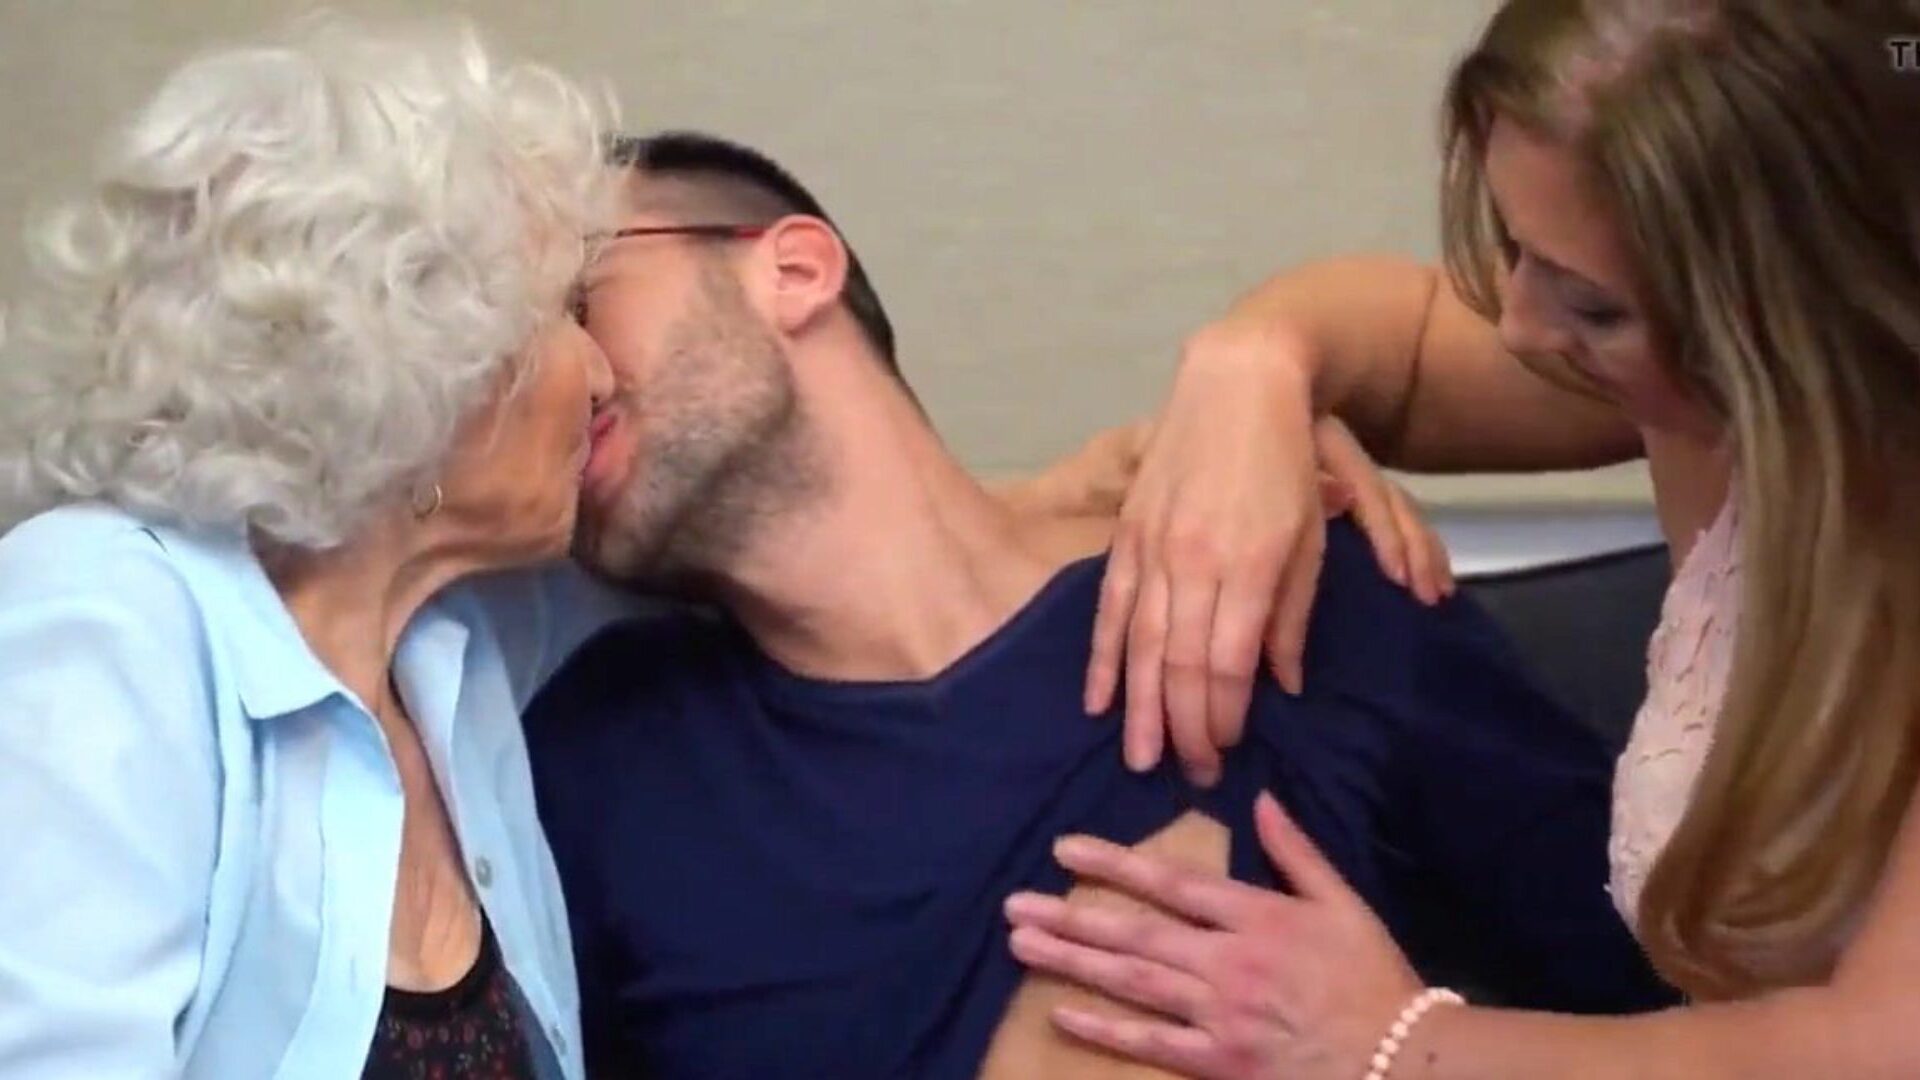 bedstemor 85år moden 49år og dreng i biseksuel trekløver se bedstemor 85år moden 49år og dreng i biseksuel trekant video på xhamster - det ultimative arkiv med gratis moden gruppe & milf trekant hd porno rør vids